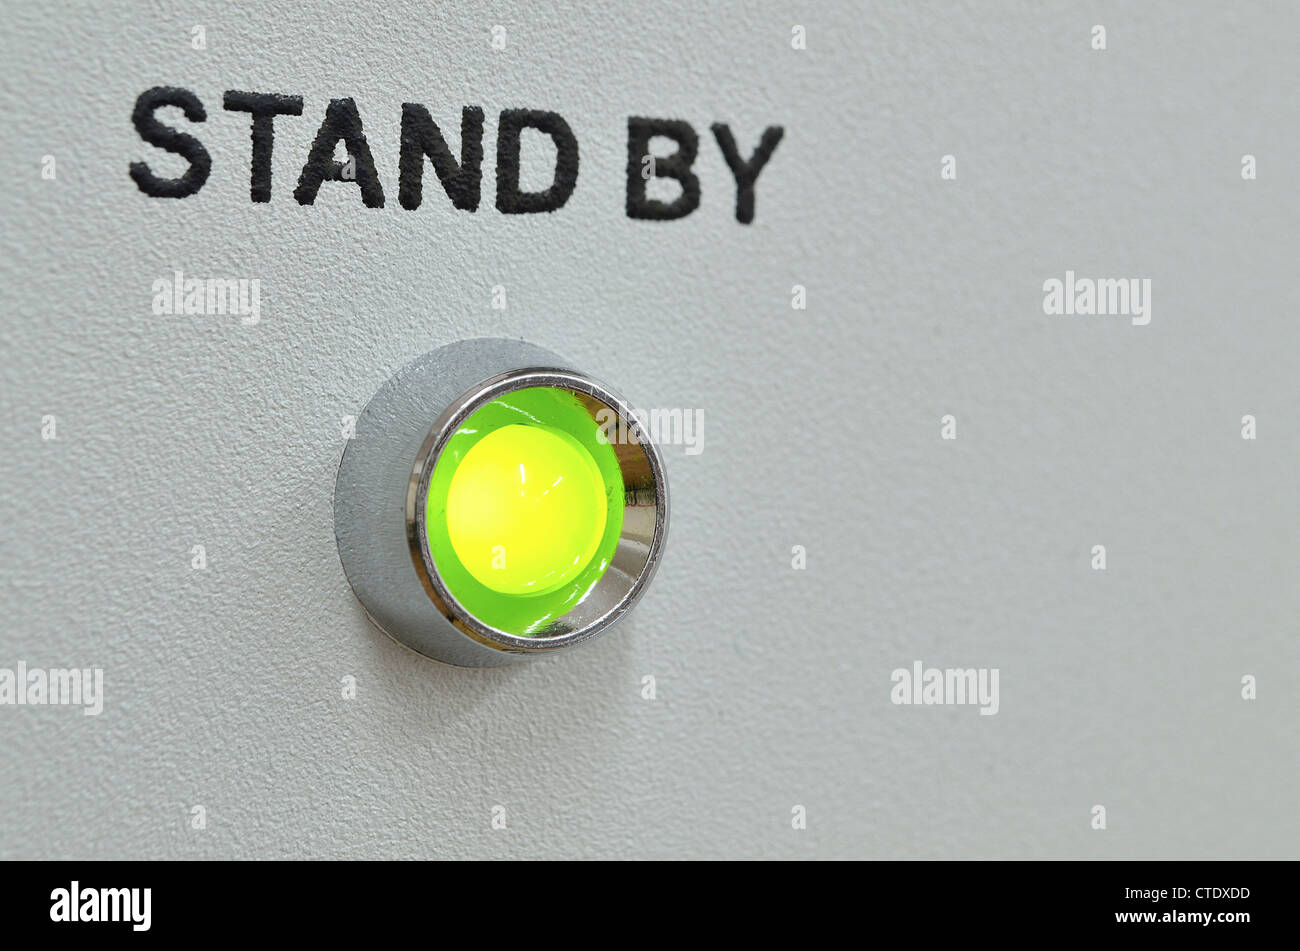 grüne LED-Beleuchtung mit Stand-by-Text über sie im grauen Bereich des Geräts; grüne LED im Fokus Stockfoto